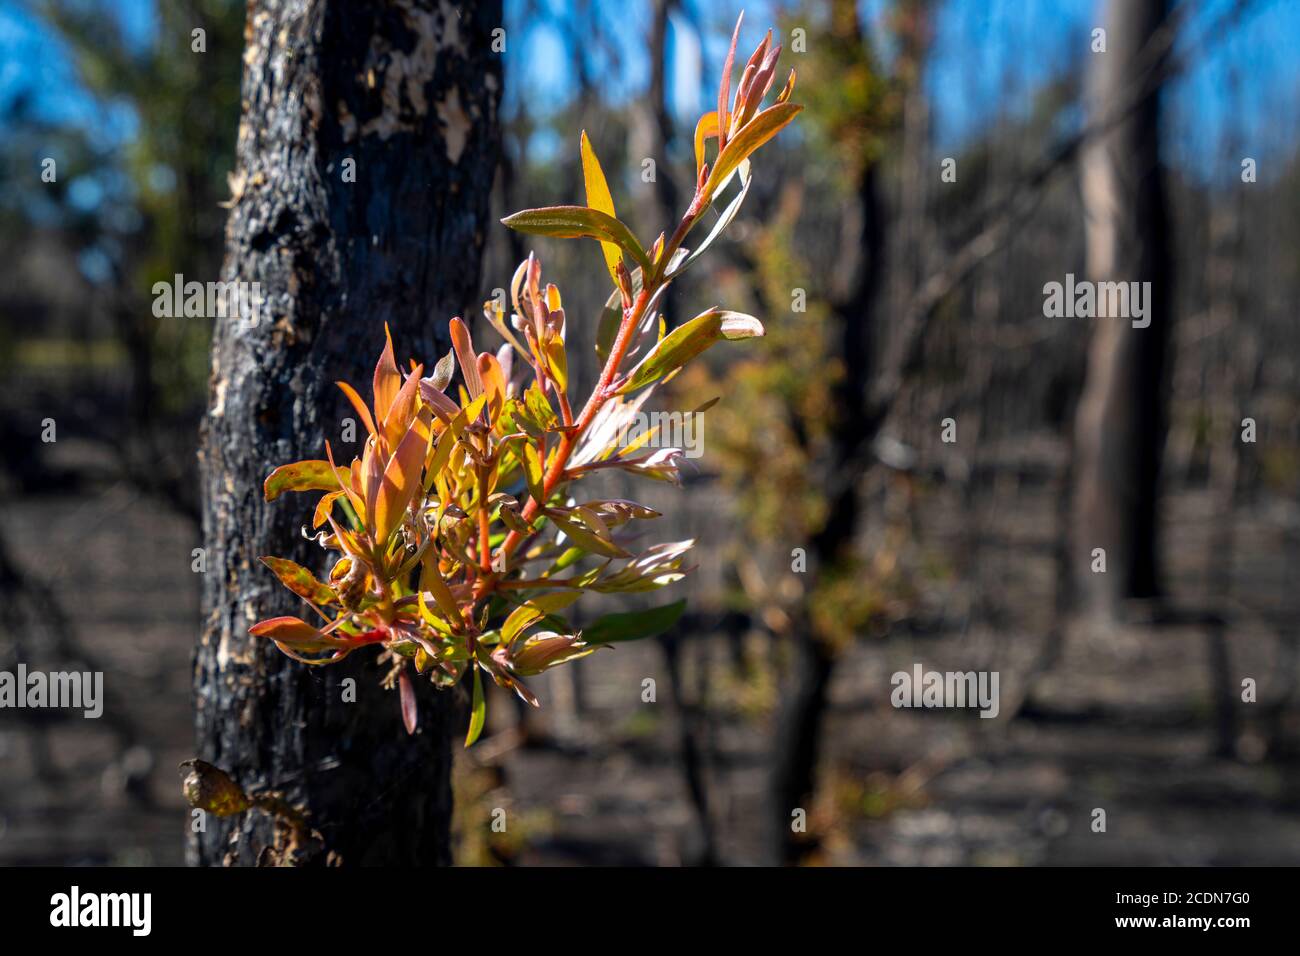 El nuevo crecimiento que aparece después de son ha sido devastado por los incendios forestales, Parque Nacional Burrum, Queensland, Australia Foto de stock